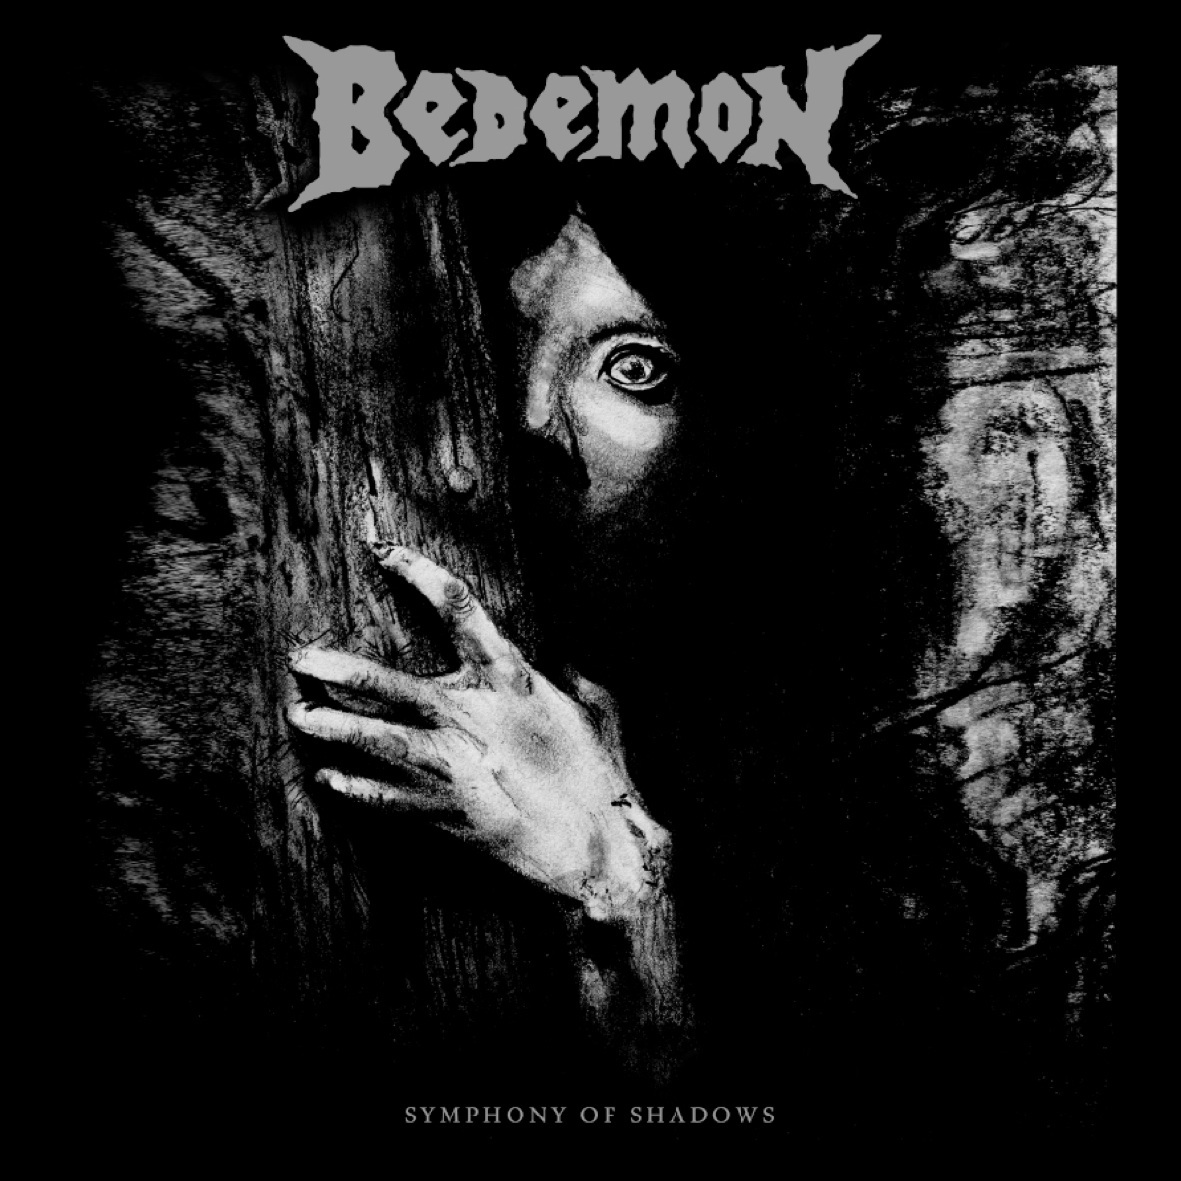 Bedemon